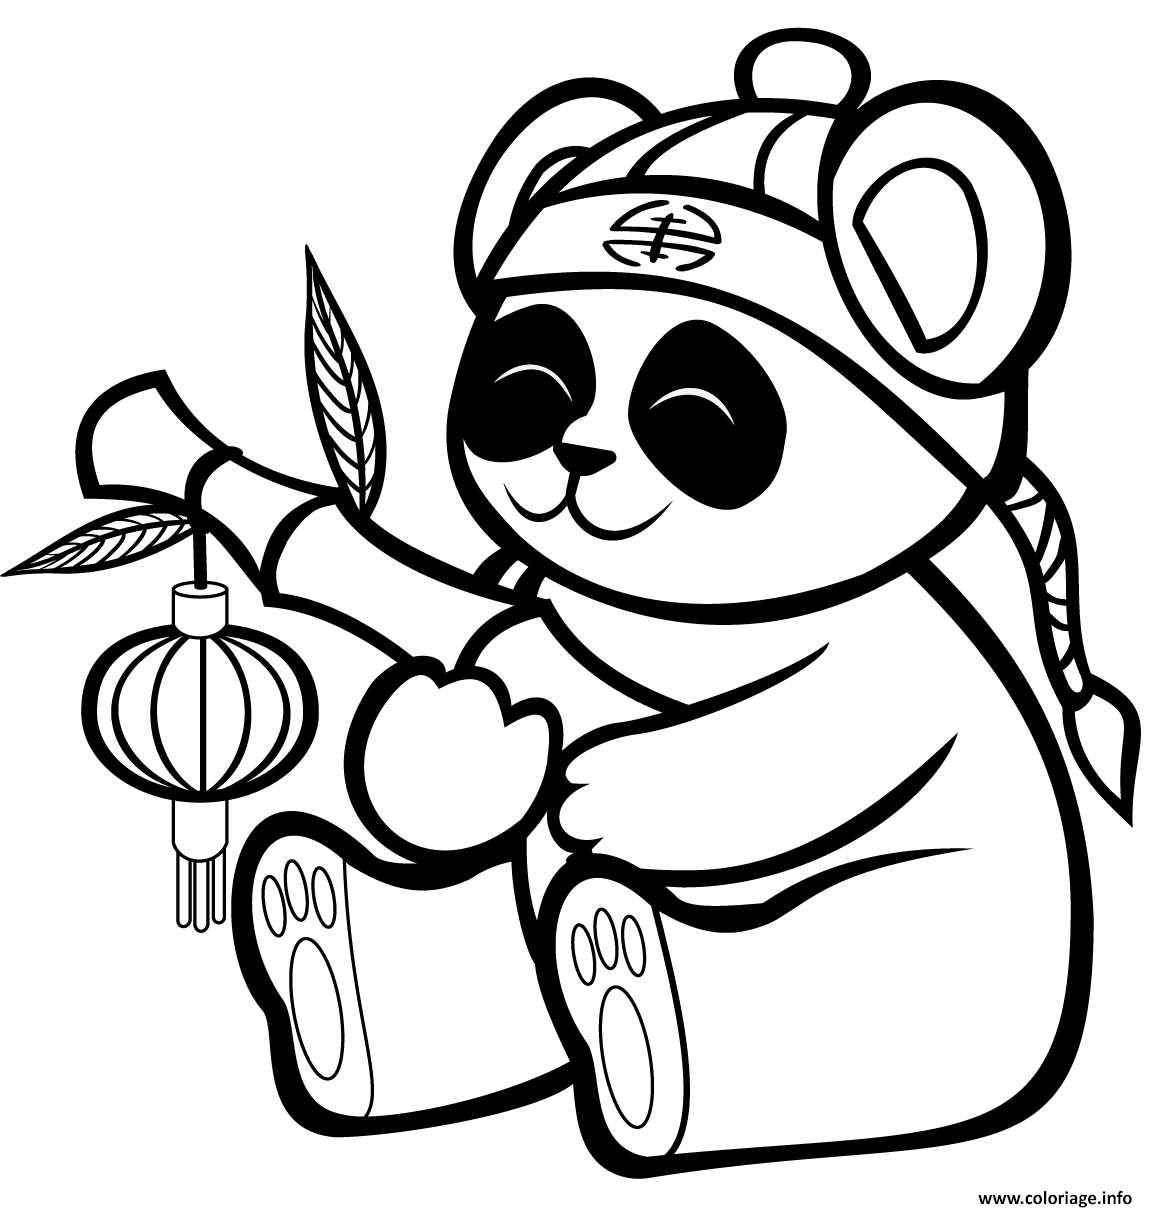 Dessin un panda mignon avec une lanterne de bambou Coloriage Gratuit à Imprimer